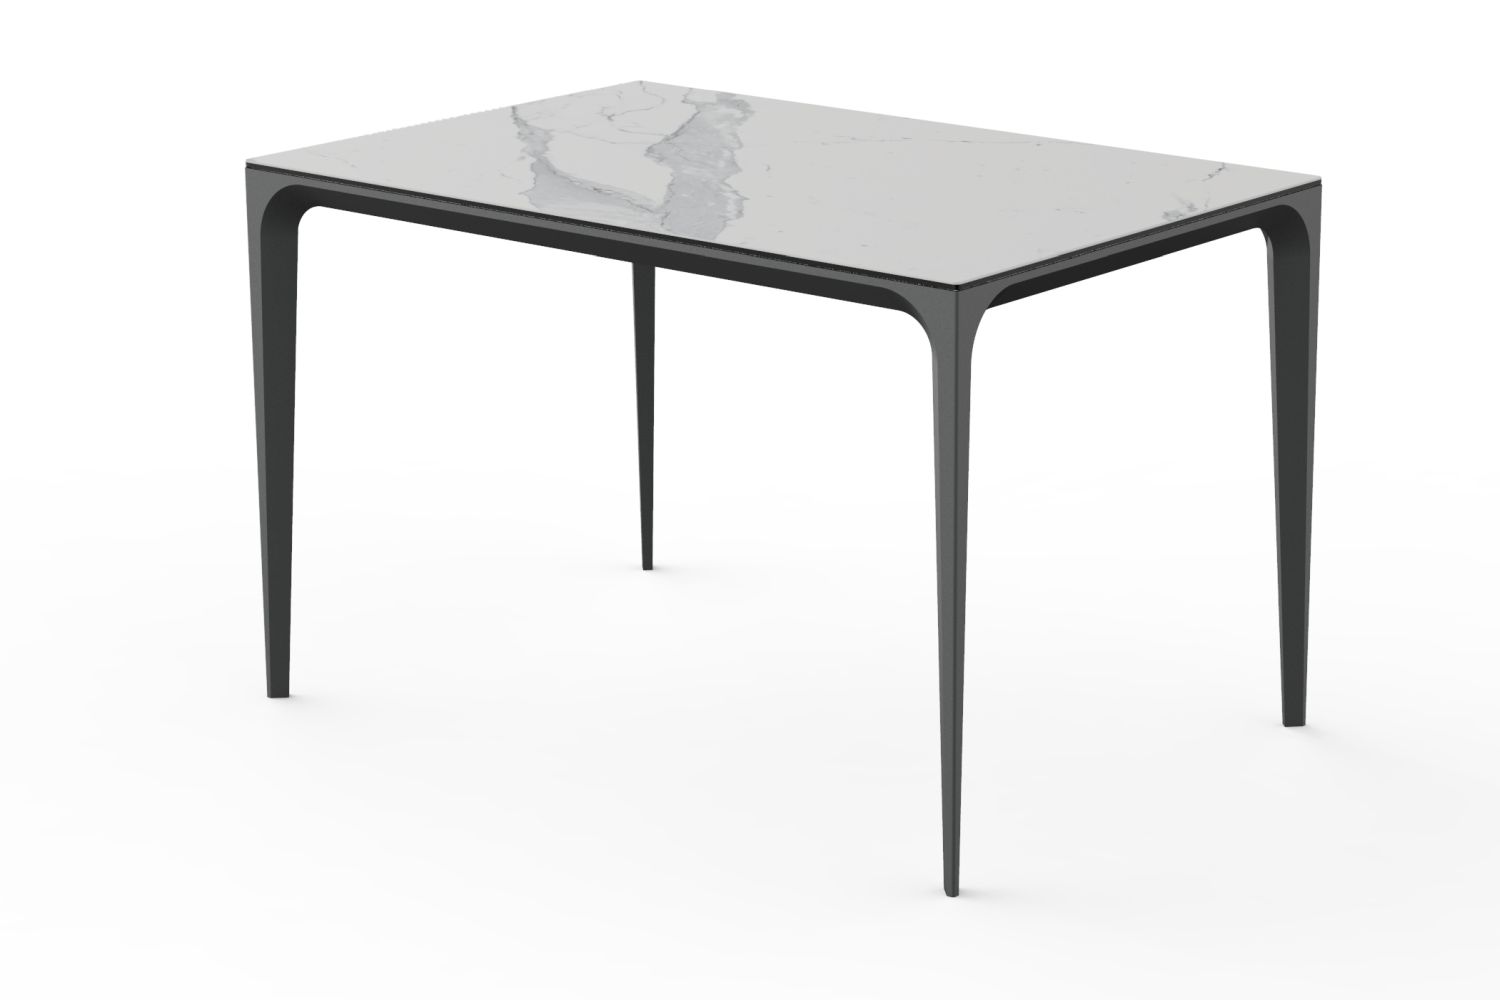 Stół Unico ze spieku kwarcowego Laminam A-4549 120x80 blat biały